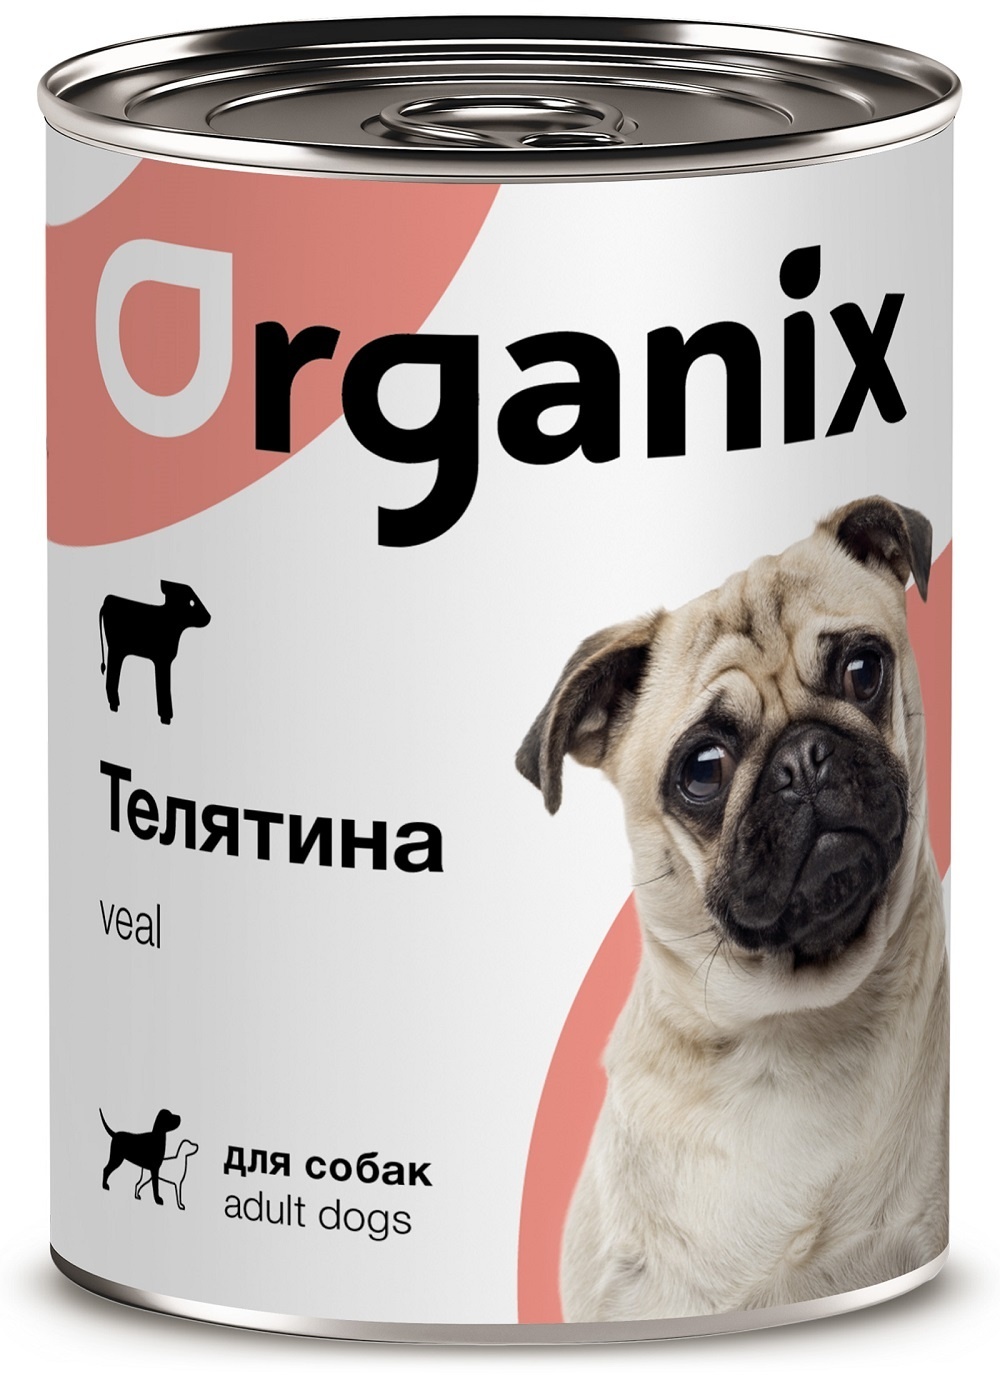 Organix консервы Organix консервы с телятиной для собак (100 г) organix консервы organix консервы для собак ягненок с рубцом и морковью 750 г